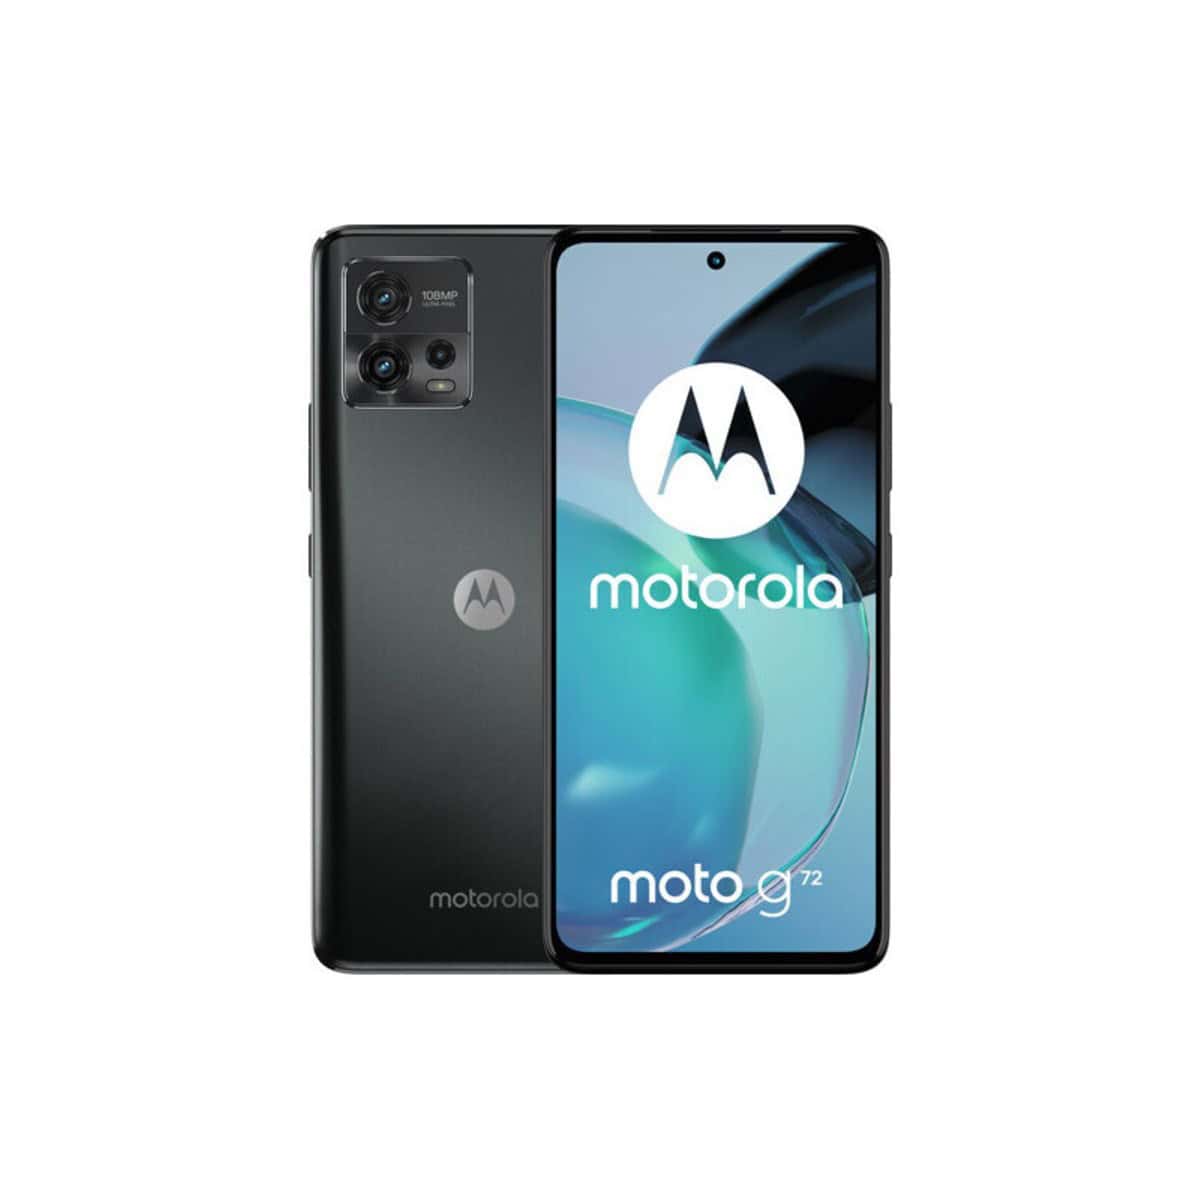 Características del smartphone Motorola Moto G72